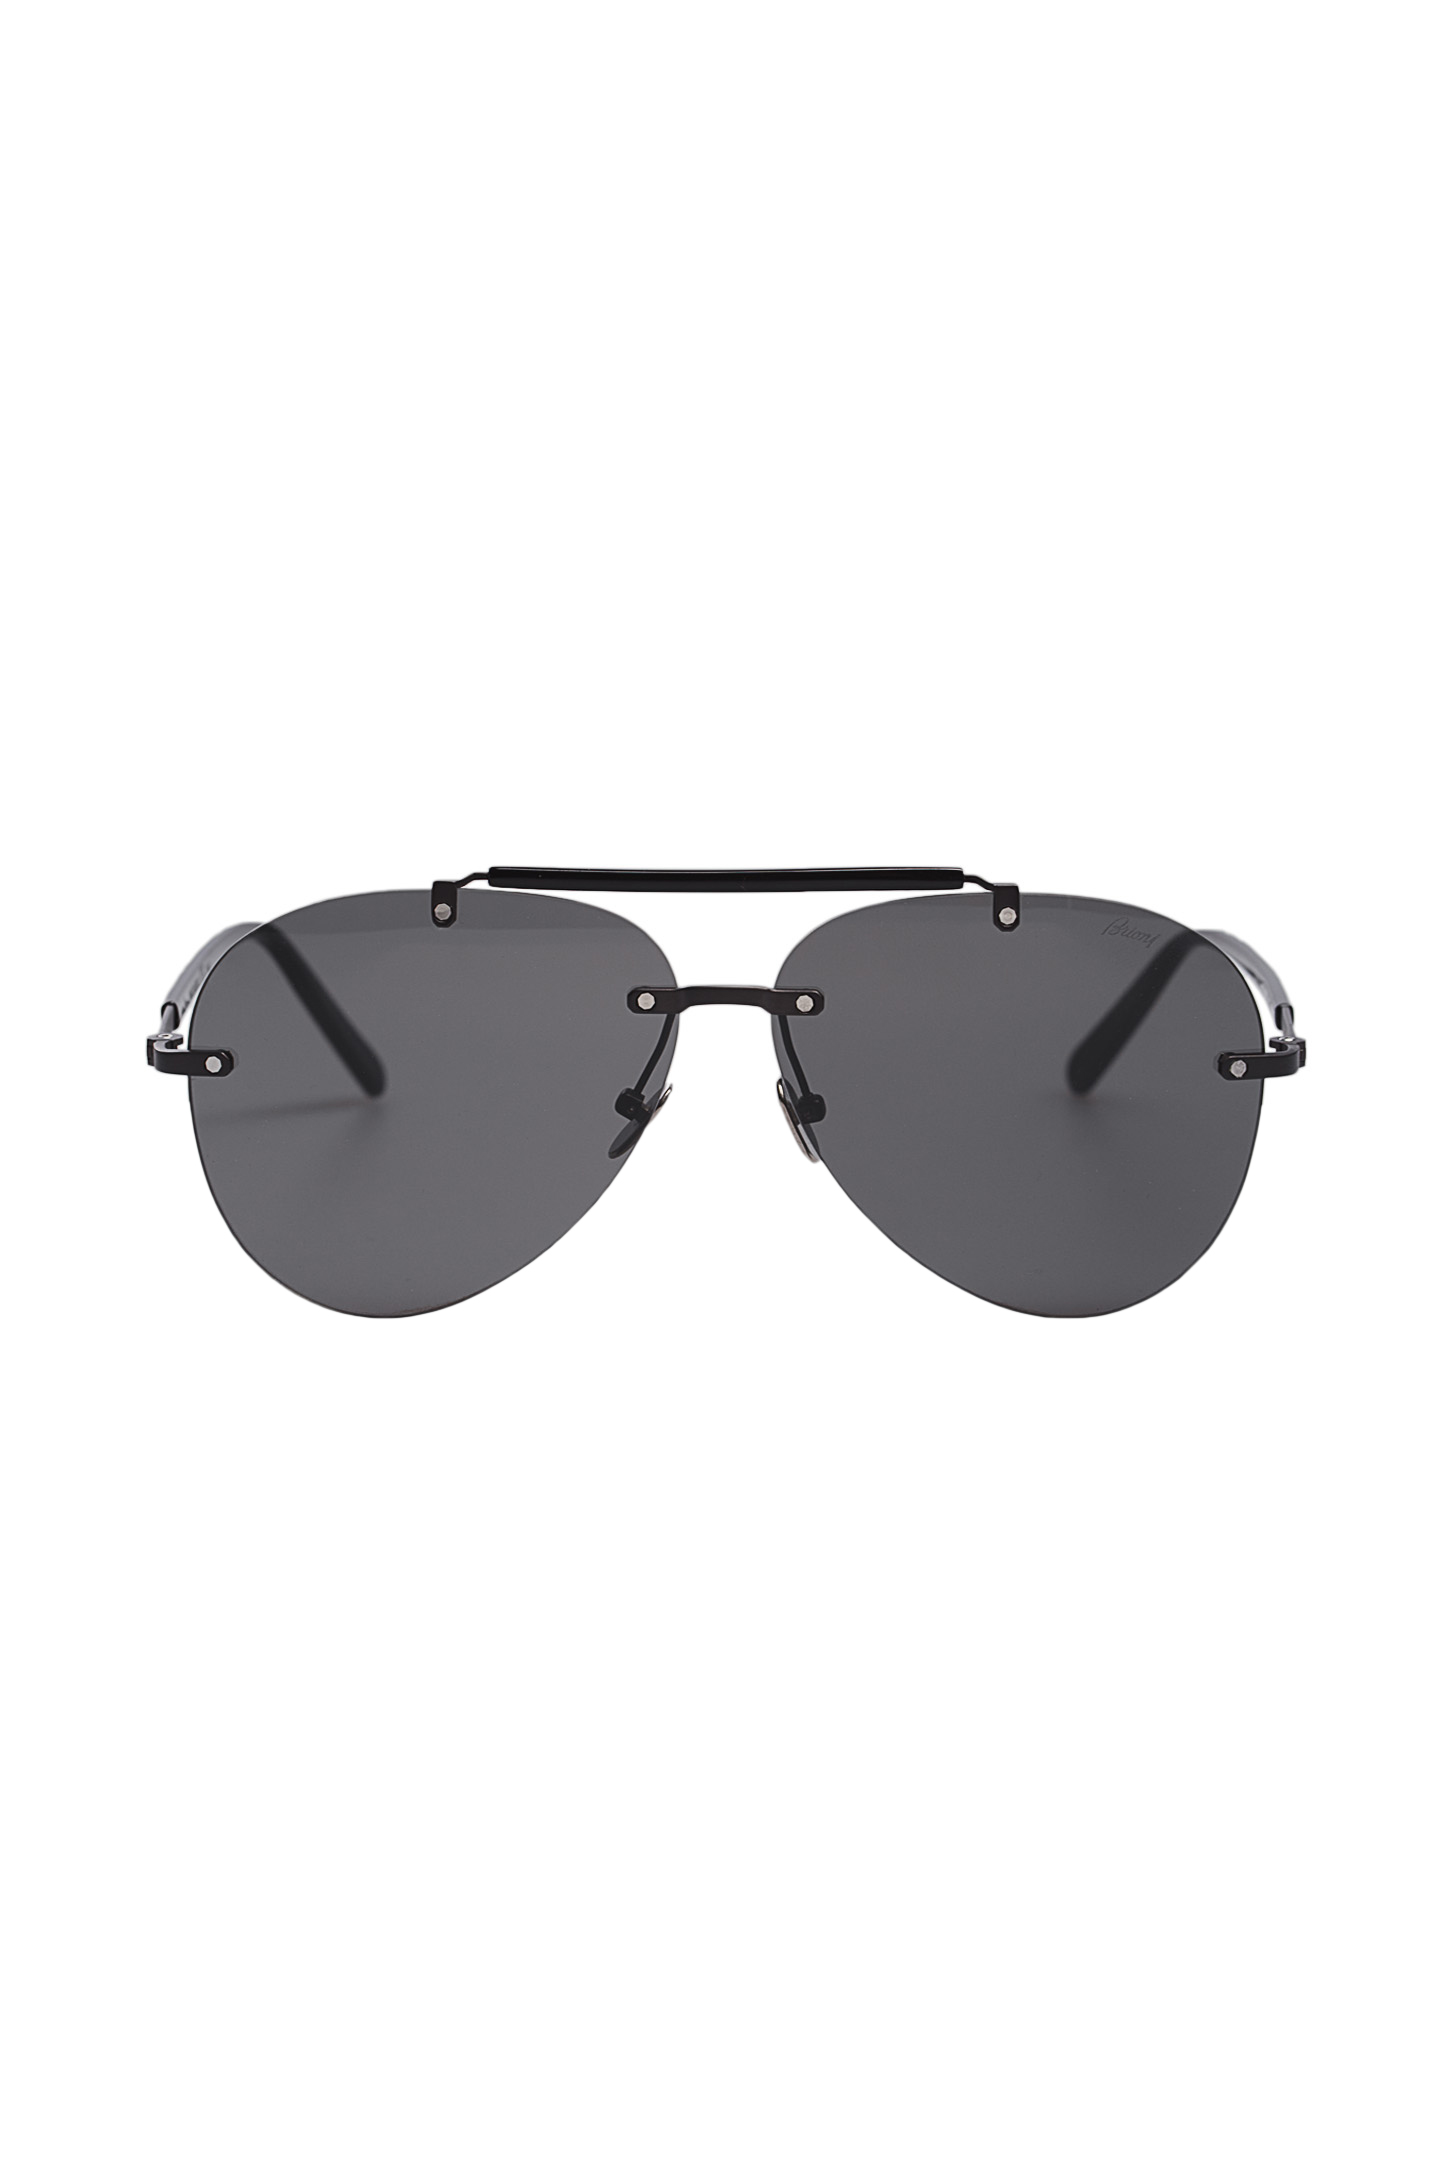 Солнцезащитные очки BRIONI ODB300 P3ZAE, цвет: Черный, Мужской